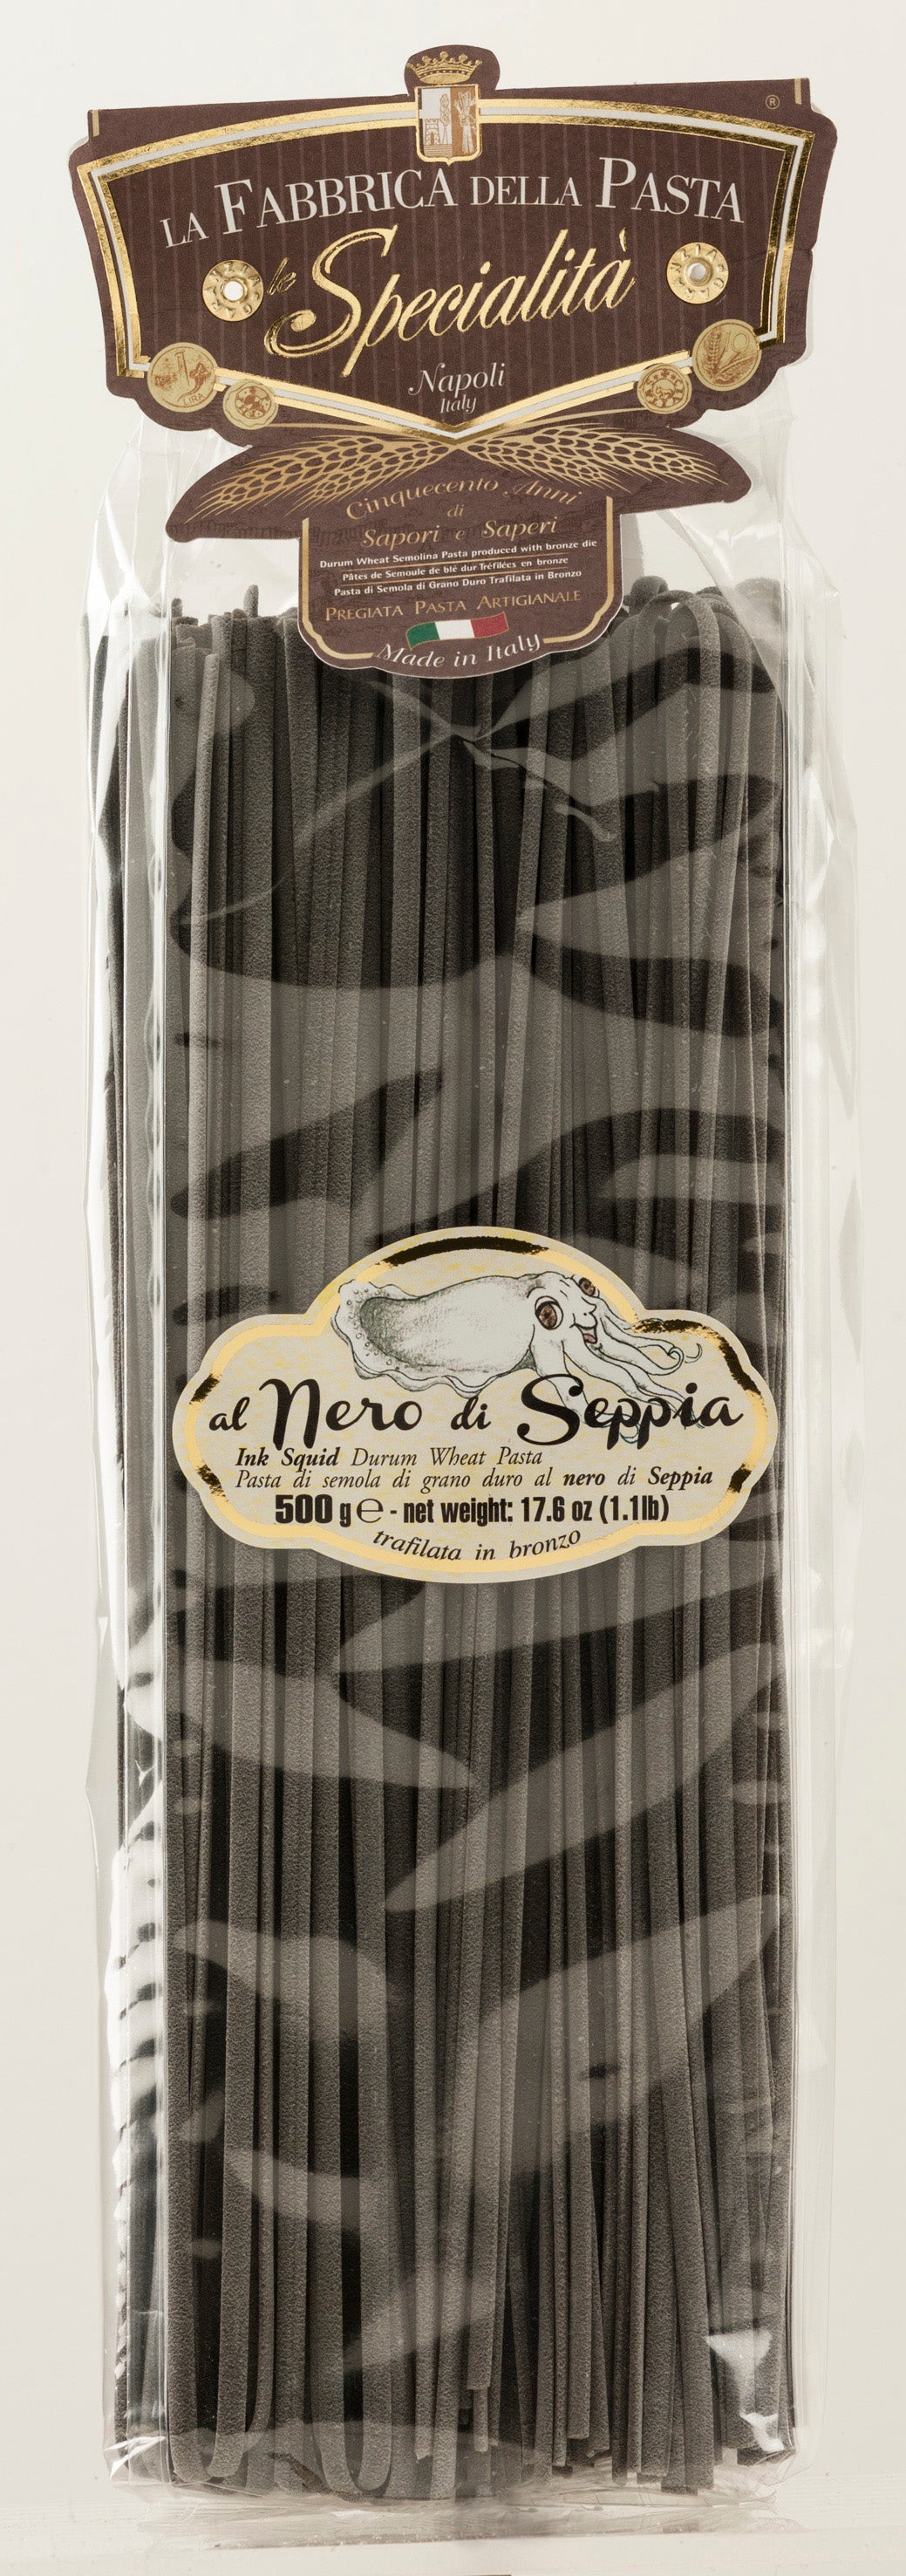 La Fabbrica Della Pasta Le Specialita - Linguine Al Nero Di Seppia - 500g (17.6 oz)